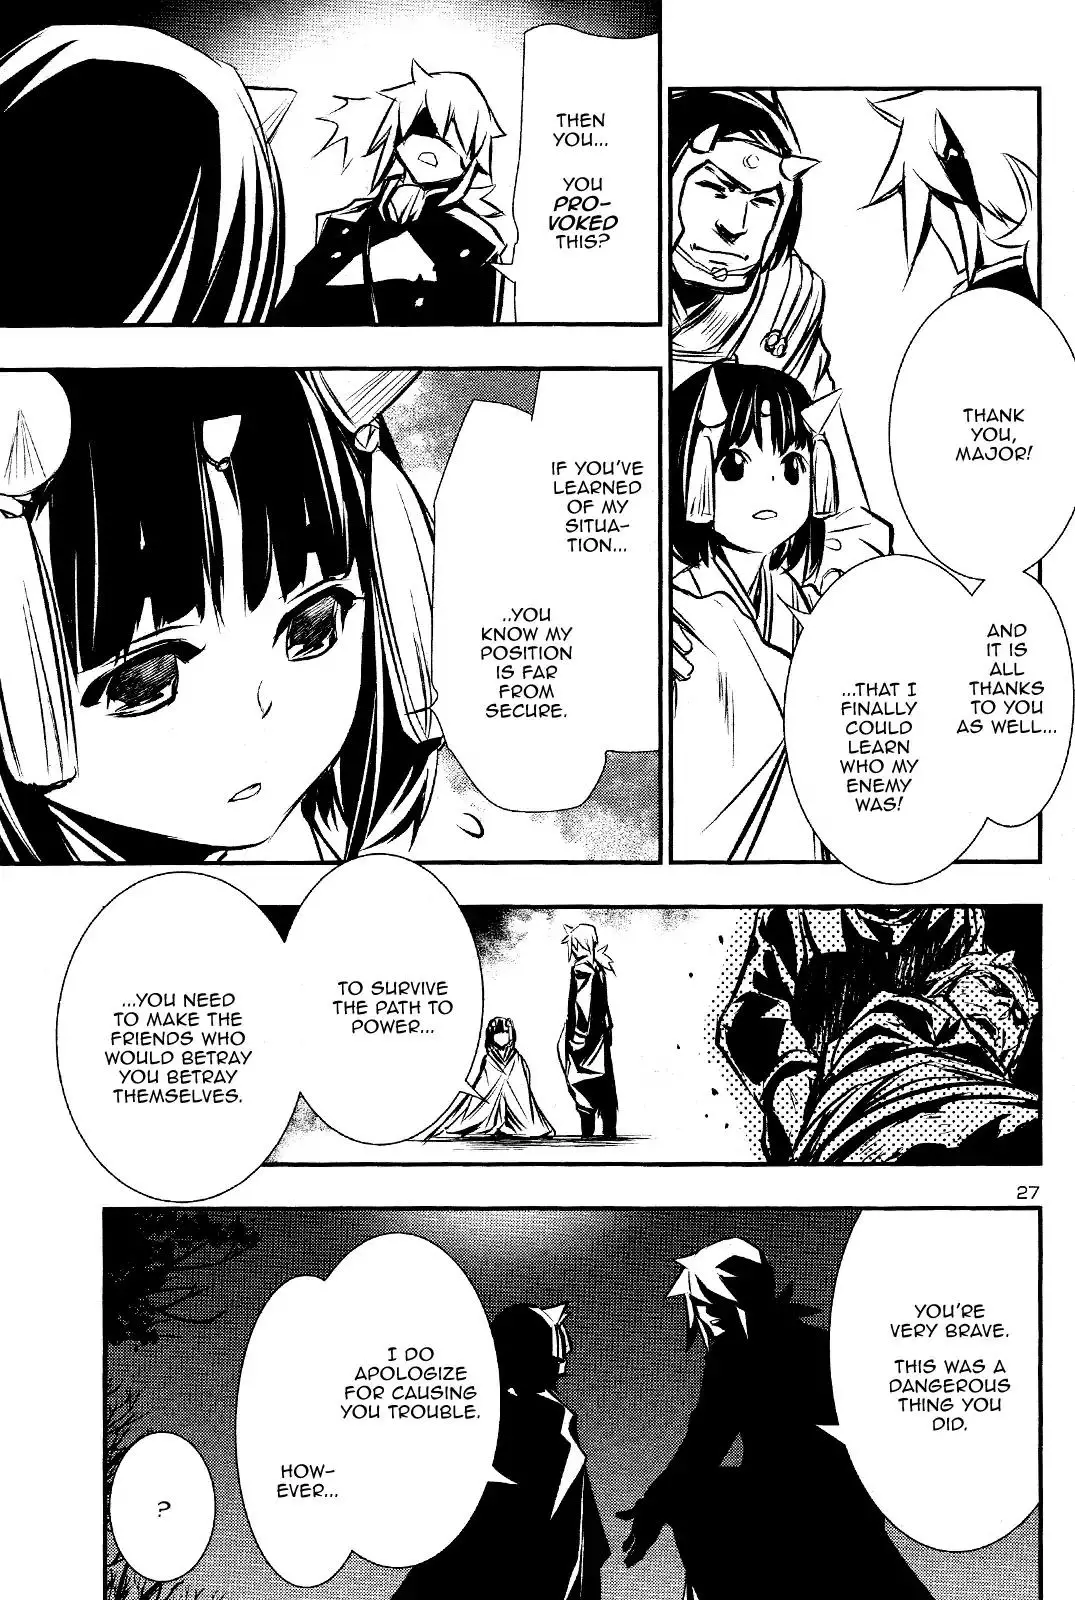 Shinju no Nectar - 29 page 27